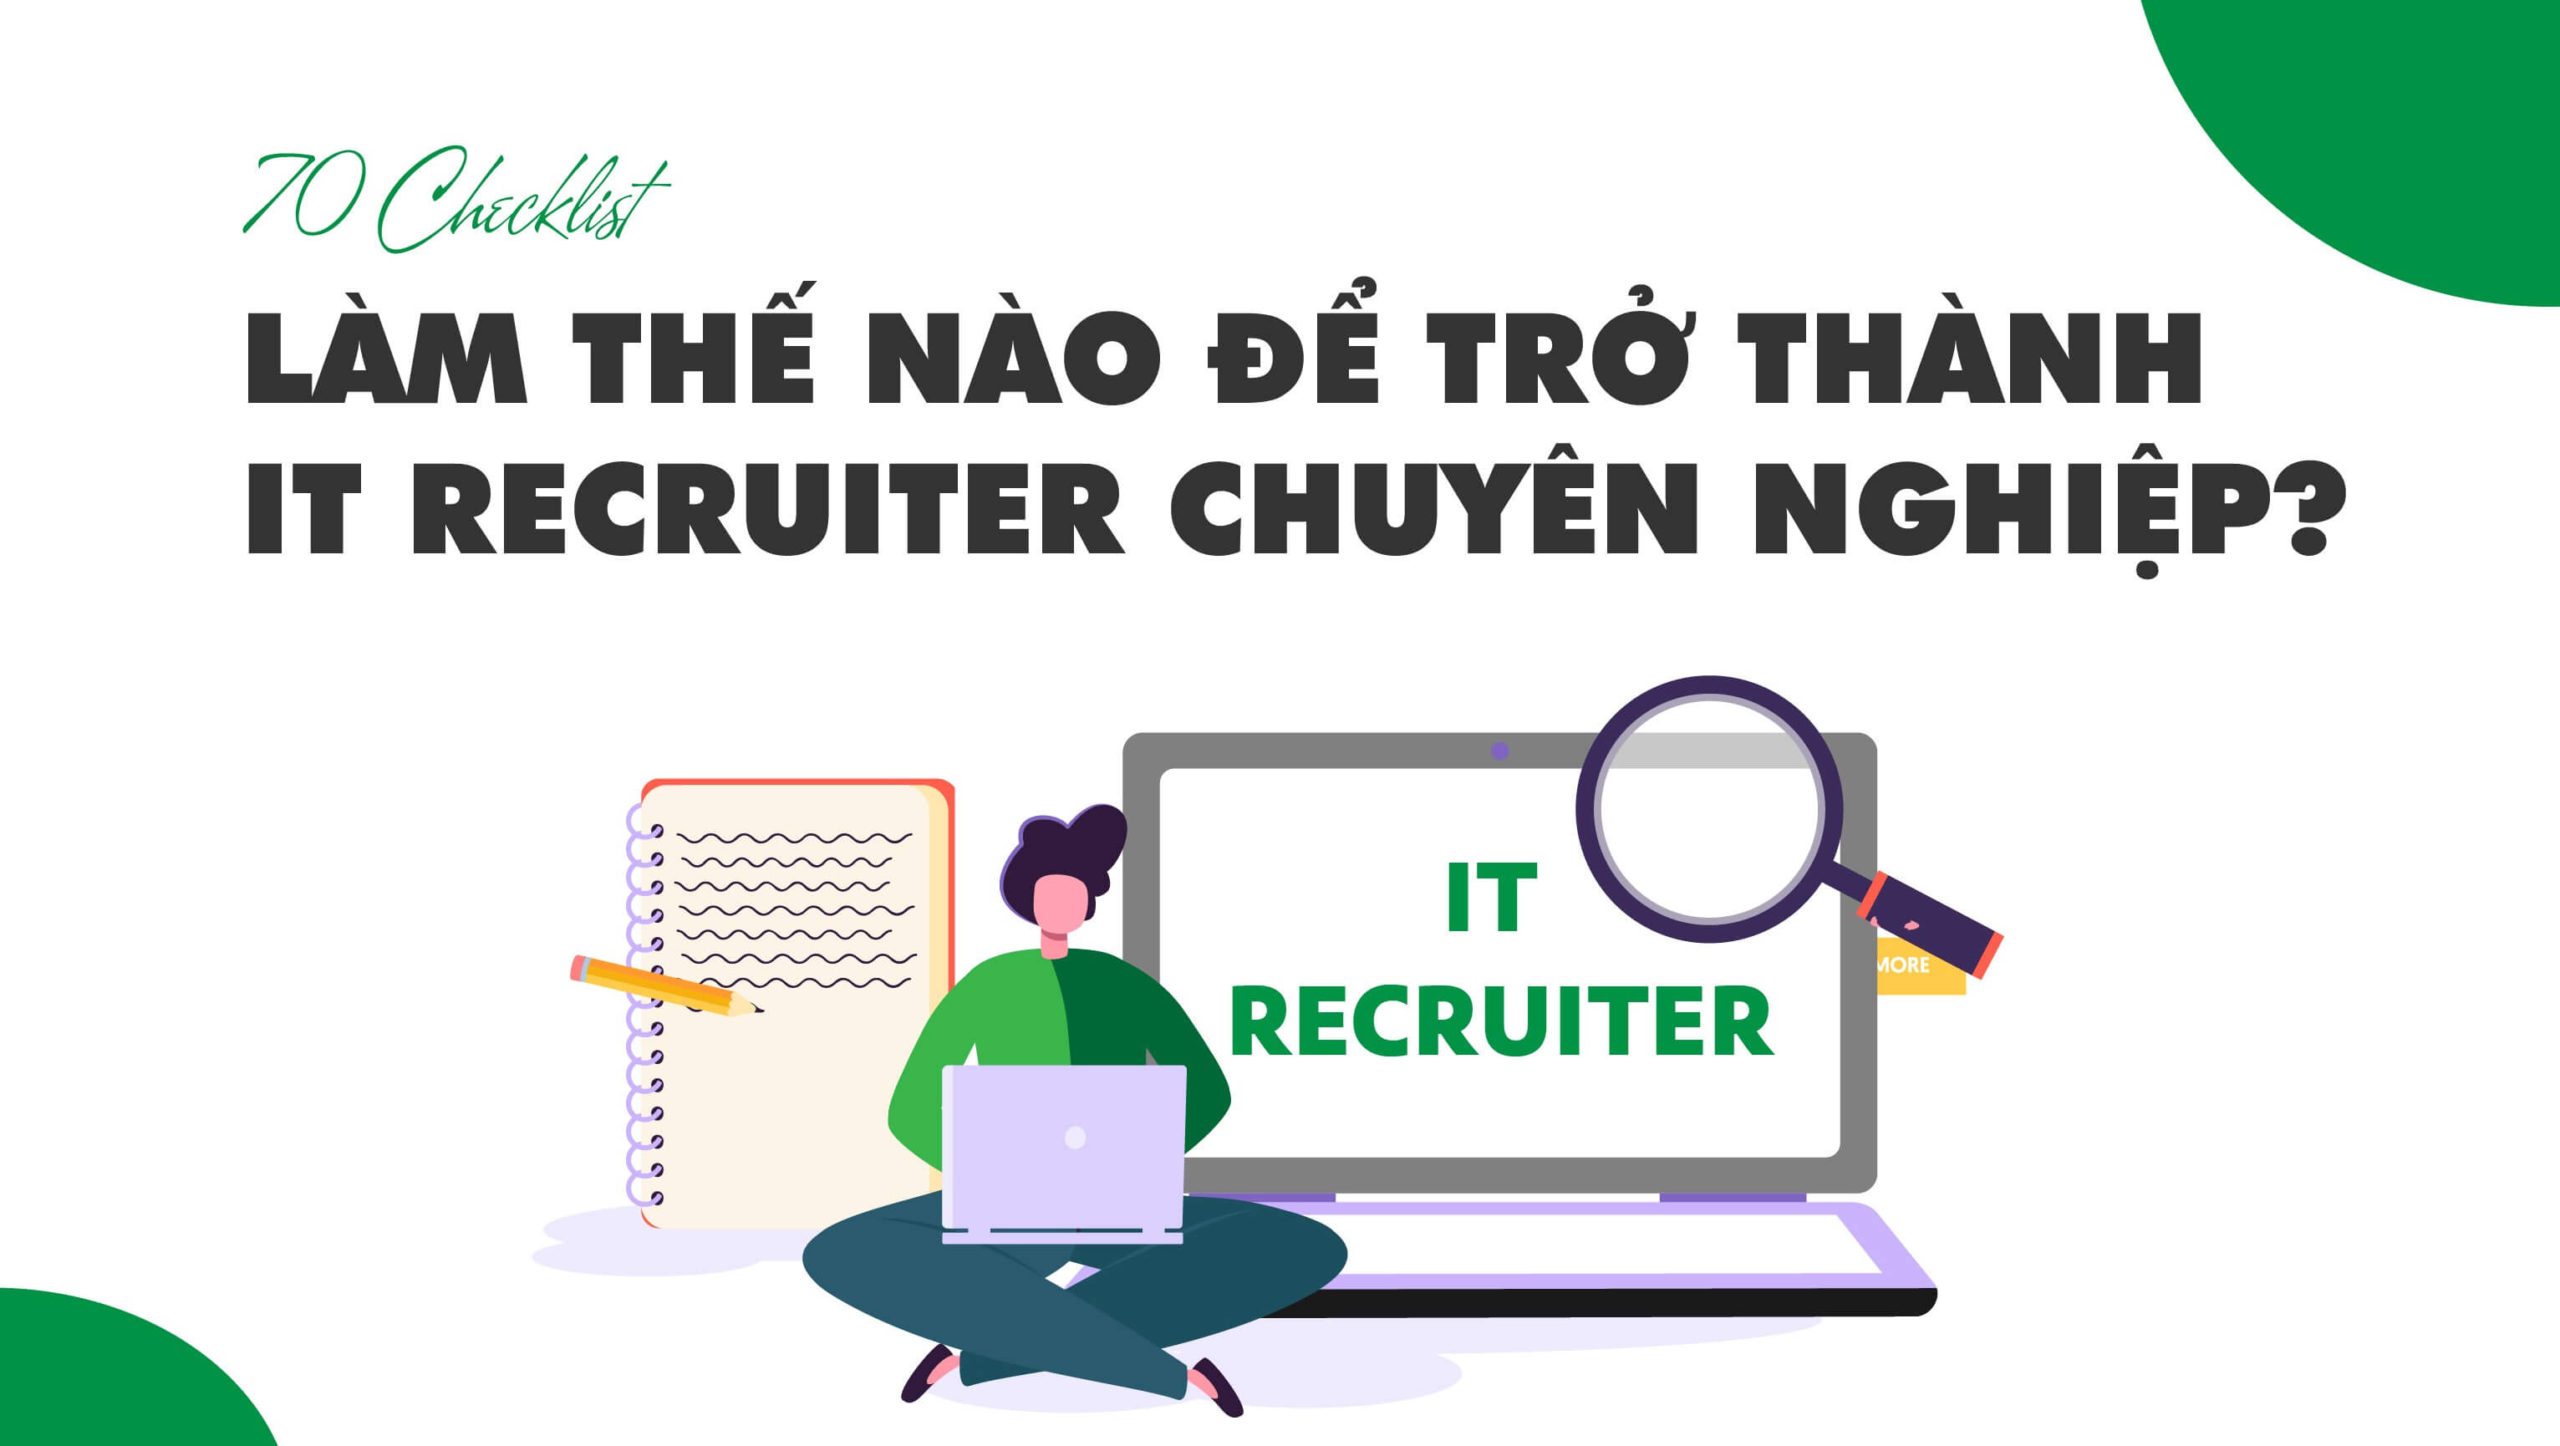 【70 Checklist】Làm thế nào để trở thành nhà tuyển dụng CNTT chuyên nghiệp